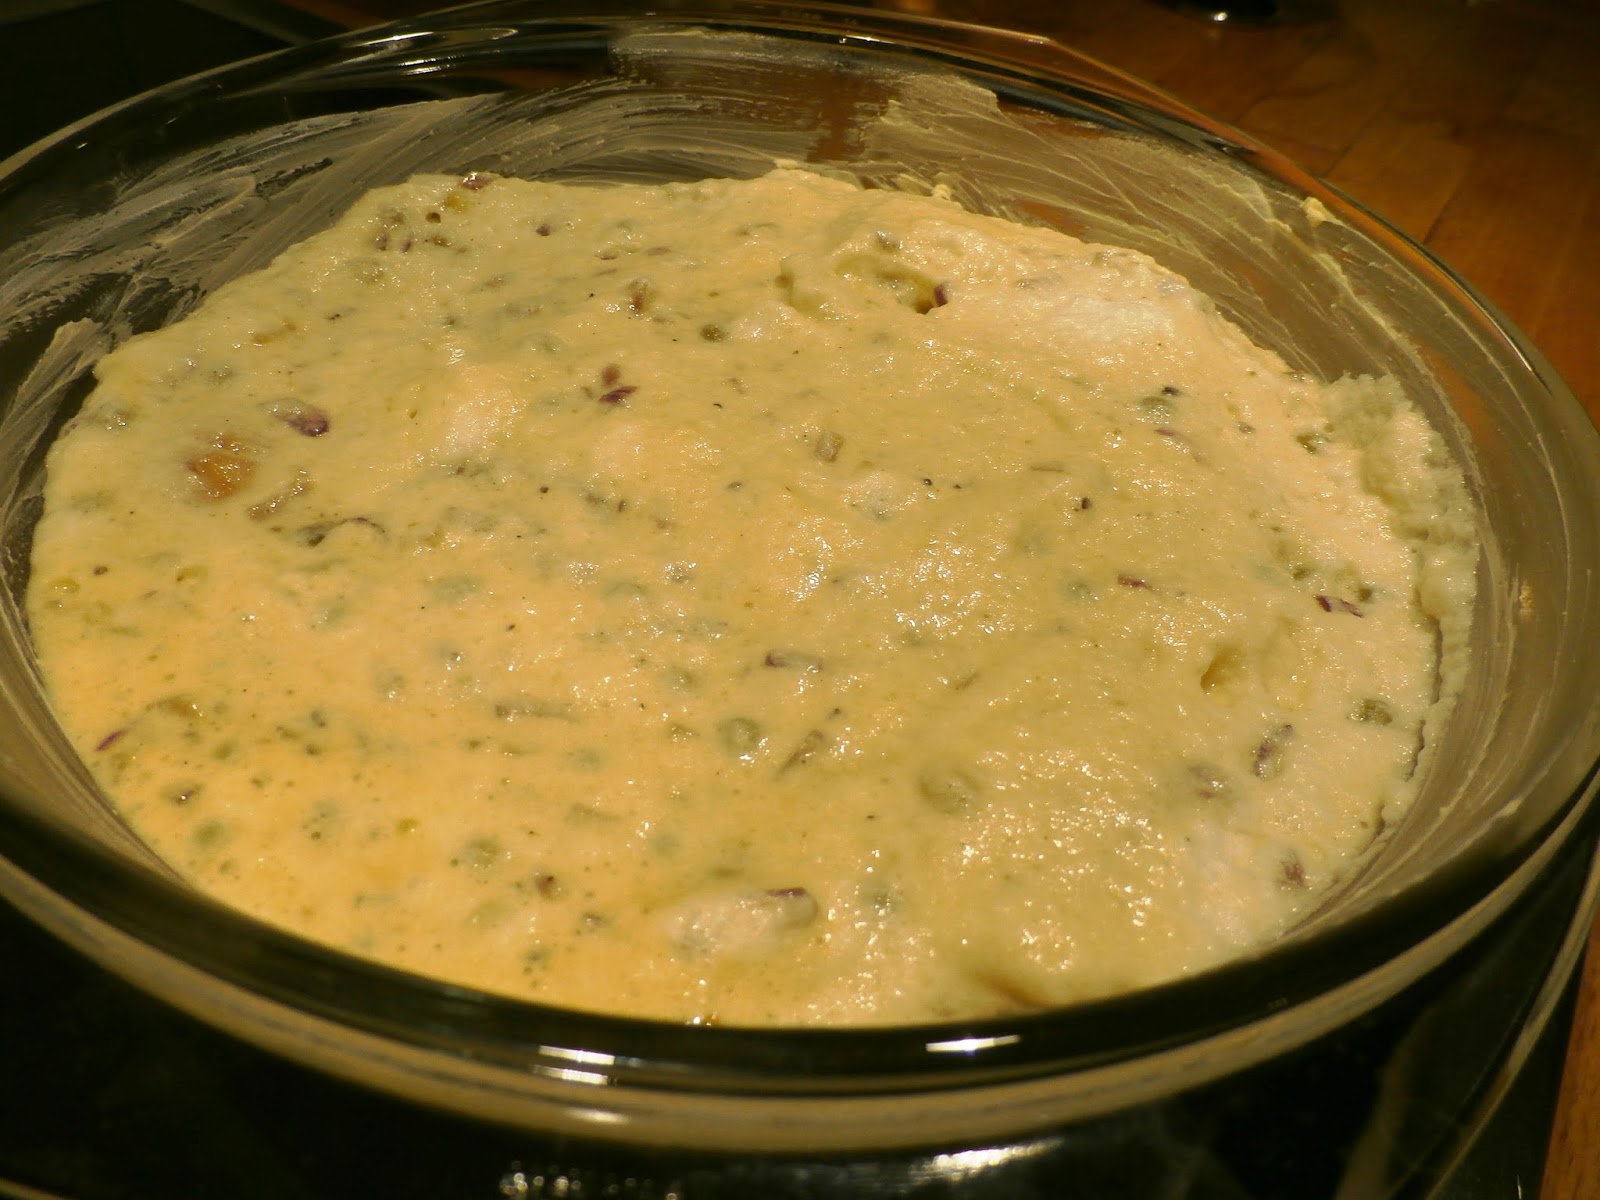 Po dodaniu piany - surowy omlet gotowy do upieczenia.